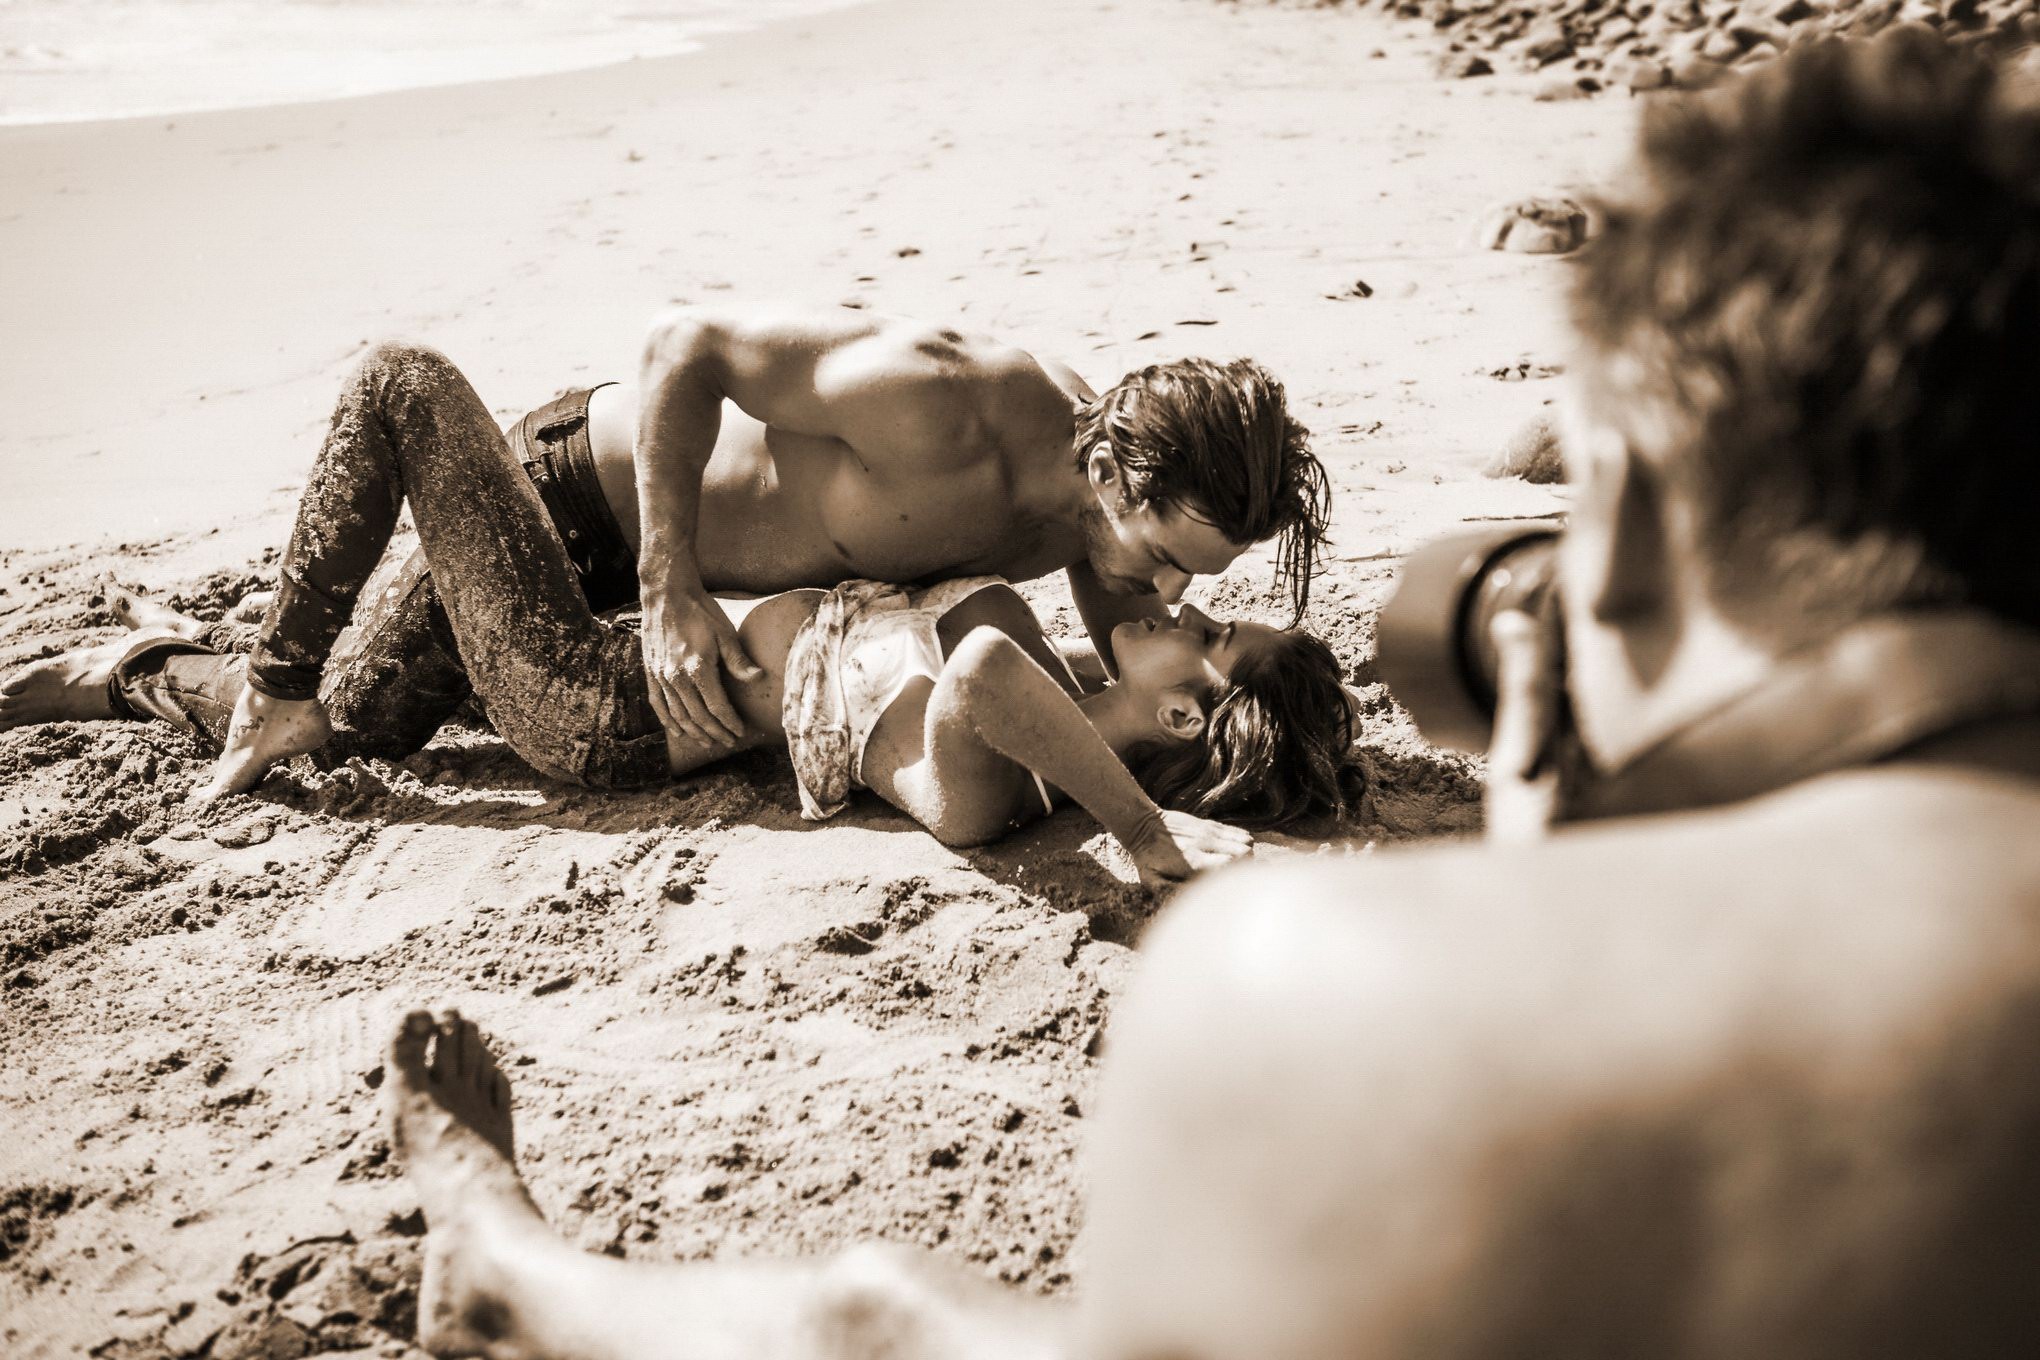 Jehane gigi paris totalmente desnuda acariciando en la playa photoshoot por steve shaw
 #75181061